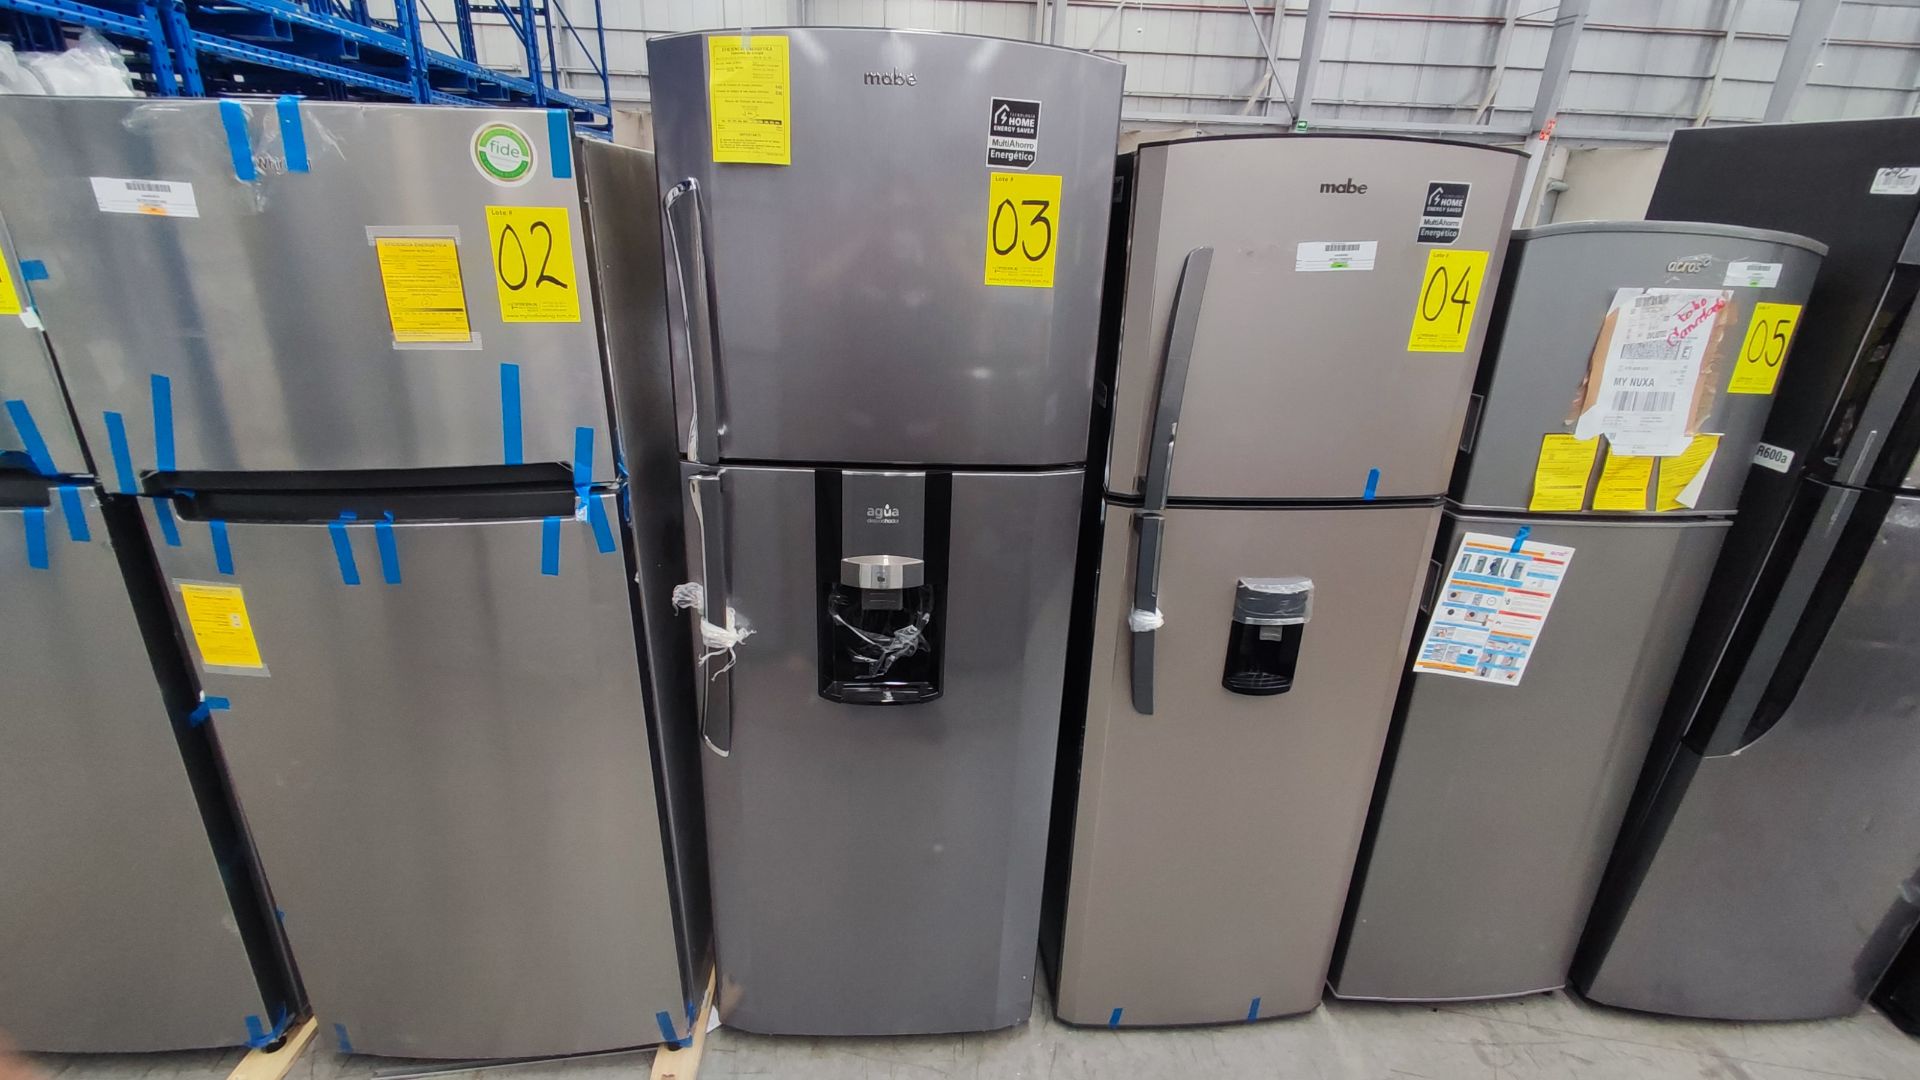 1 Refrigerador Marca Mabe, Modelo RMT400RY, Serie 2111B418085, Color Gris Detalles Estéticos. Favor